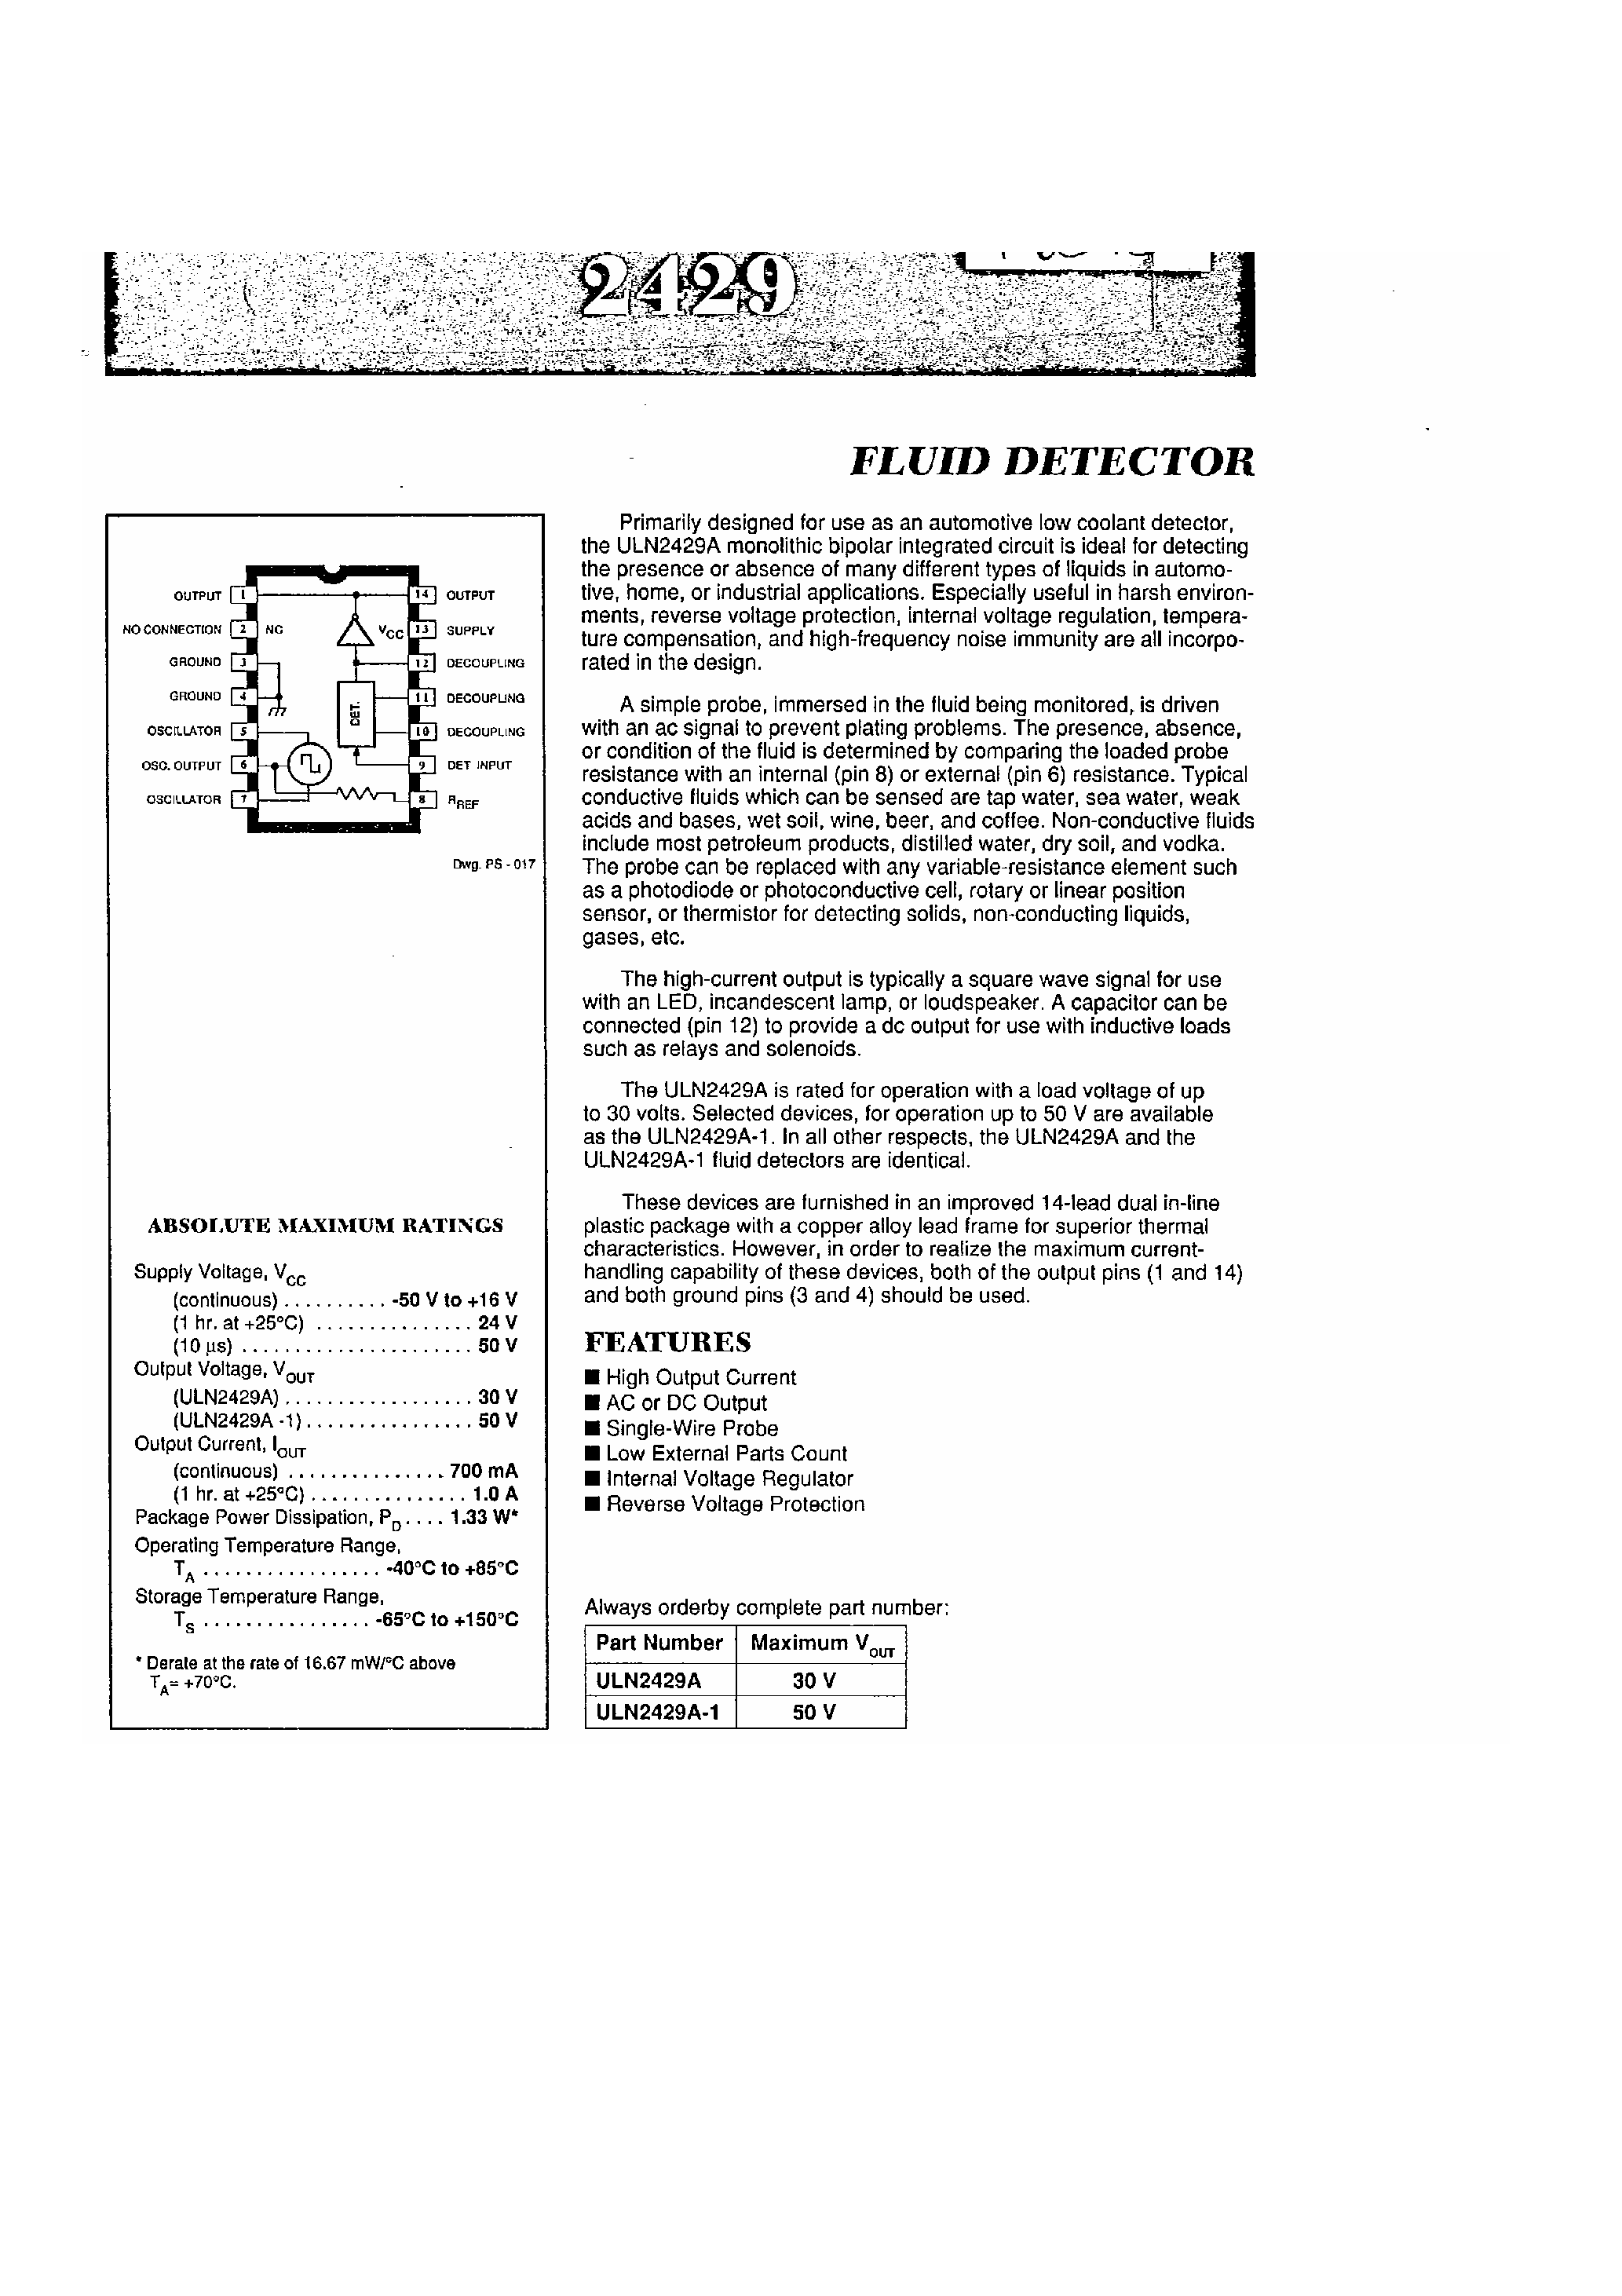 Даташит ULN2429 - Fluid Detector страница 1